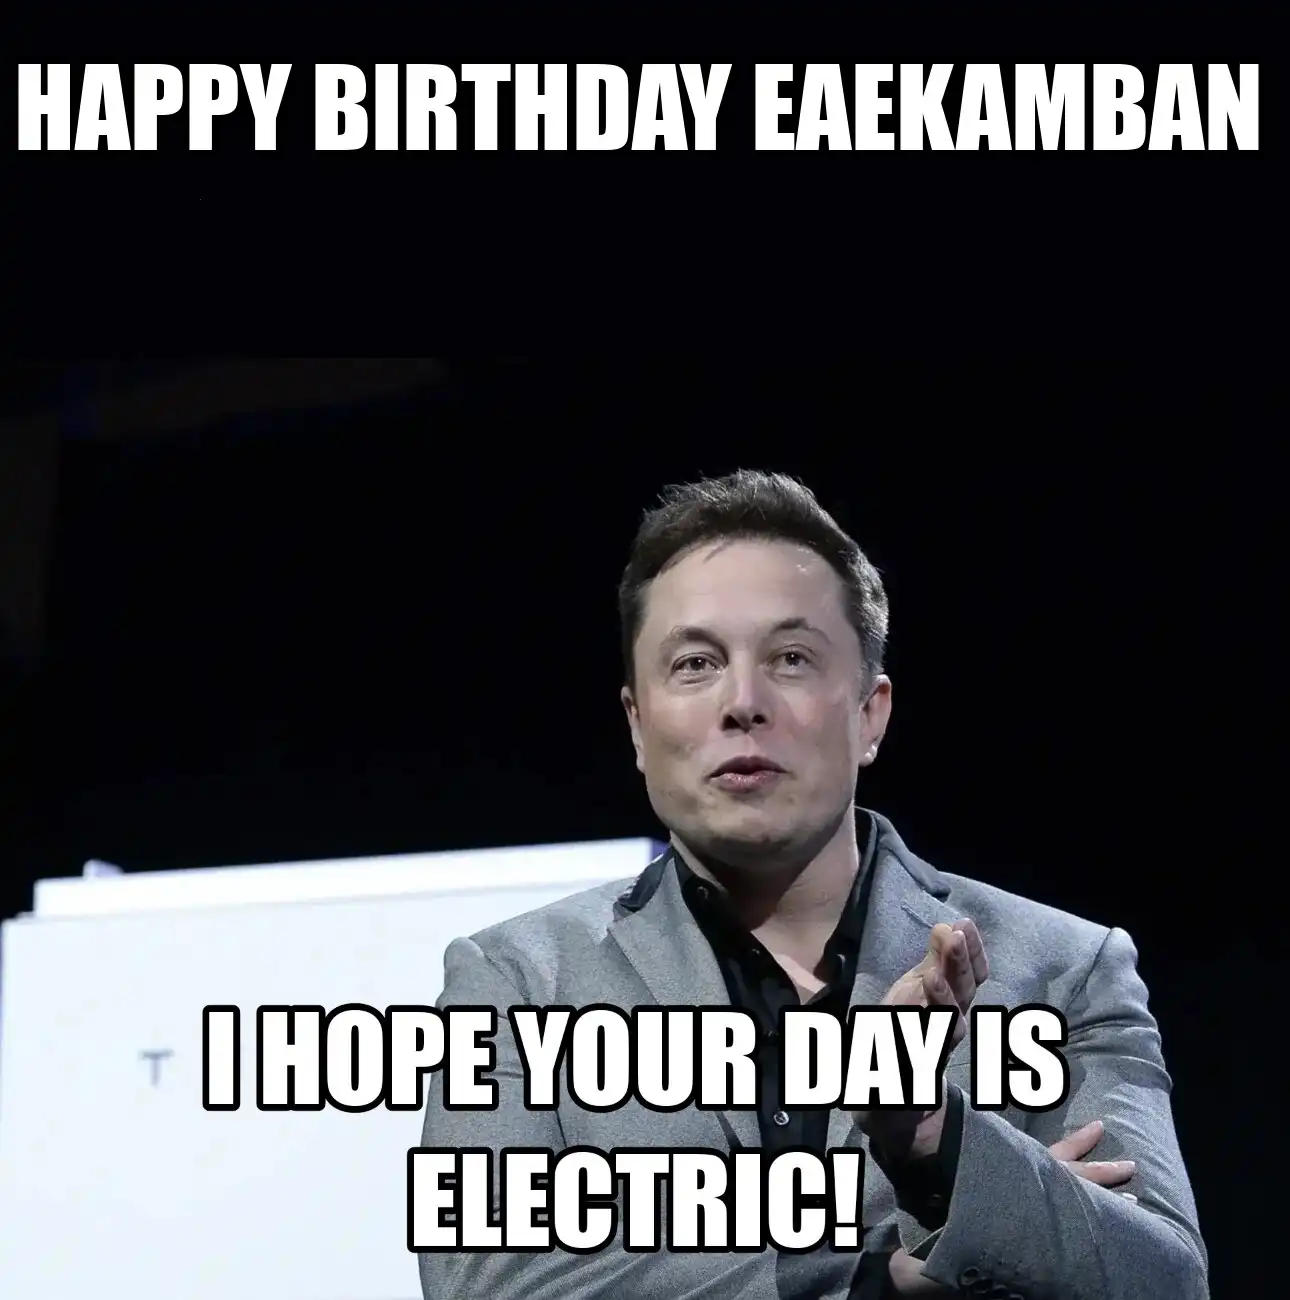 Happy Birthday Eaekamban I Hope Your Day Is Electric Meme